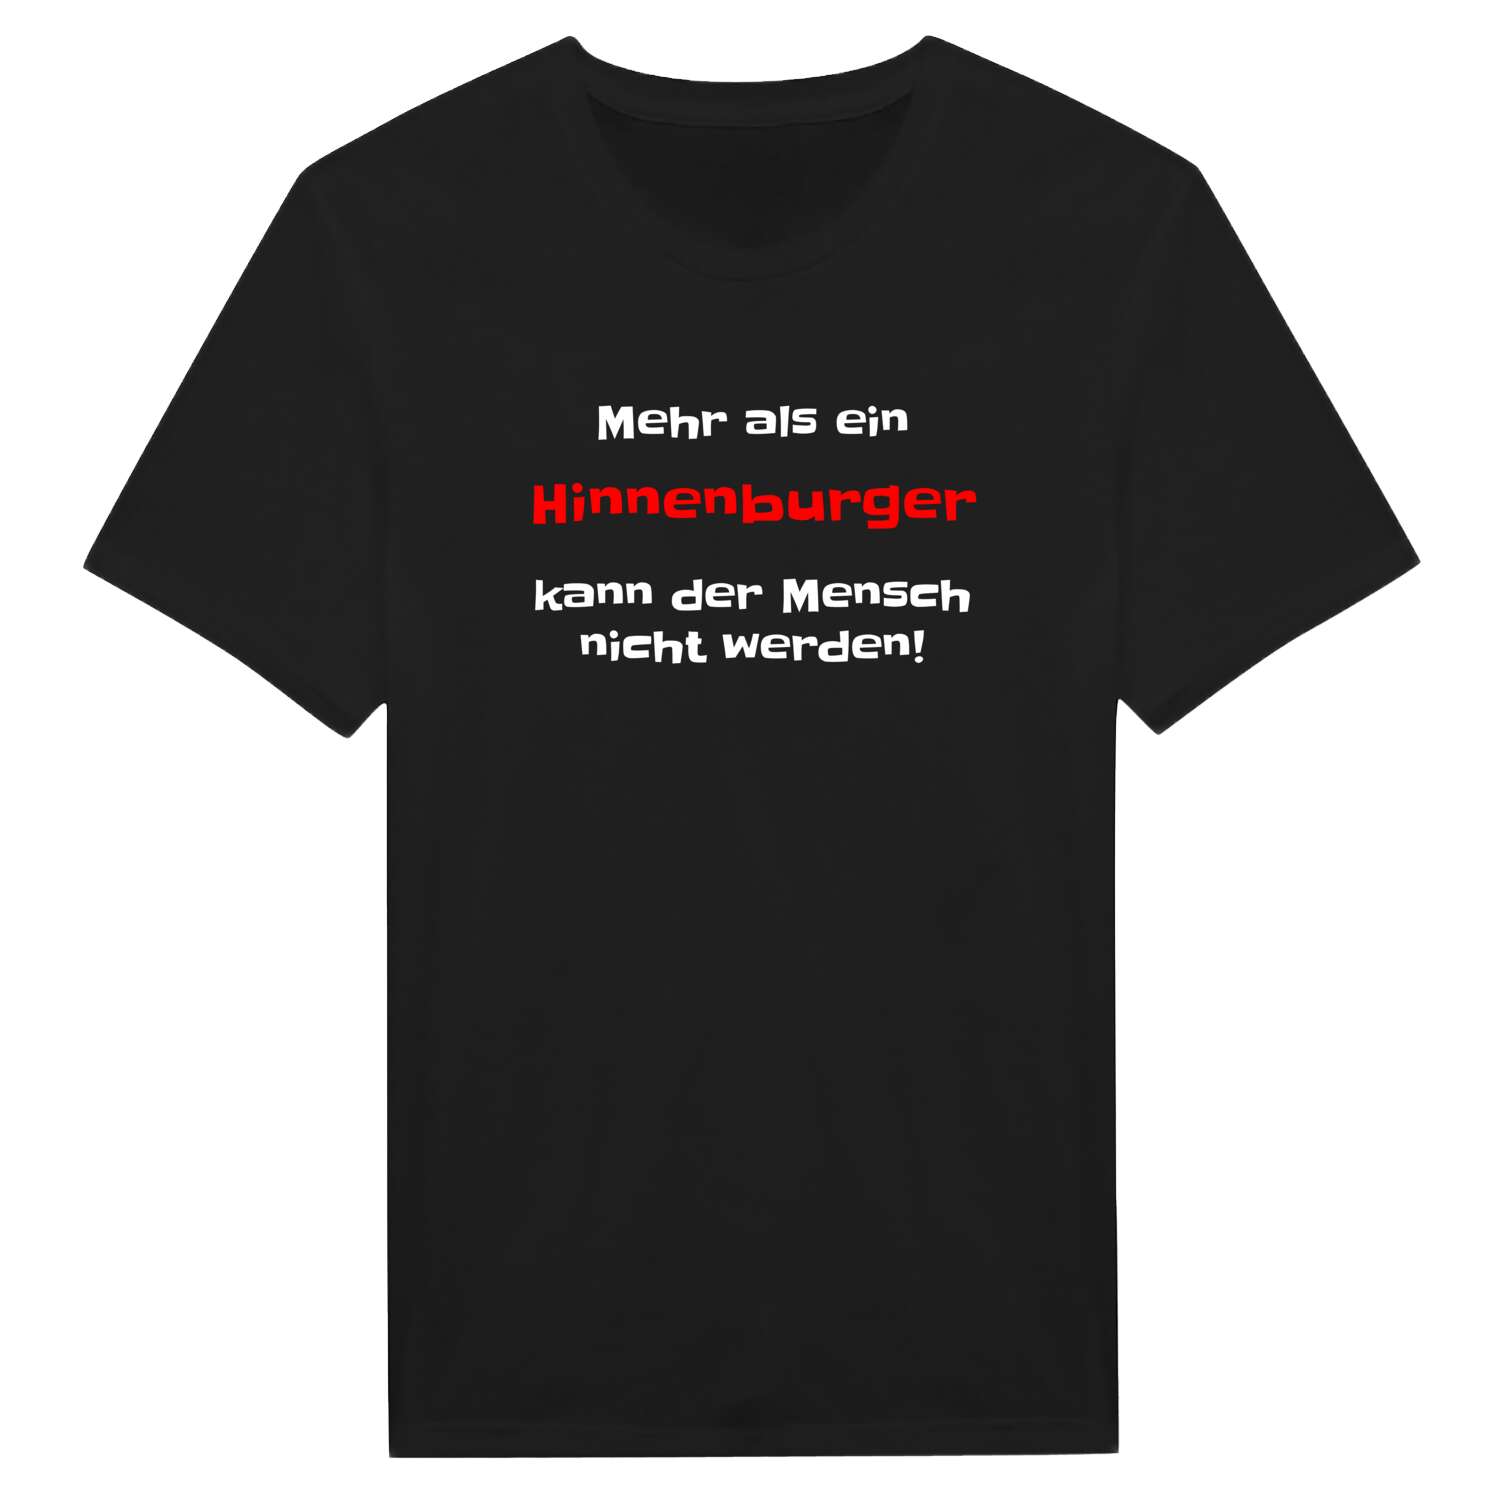 Hinnenburg T-Shirt »Mehr als ein«